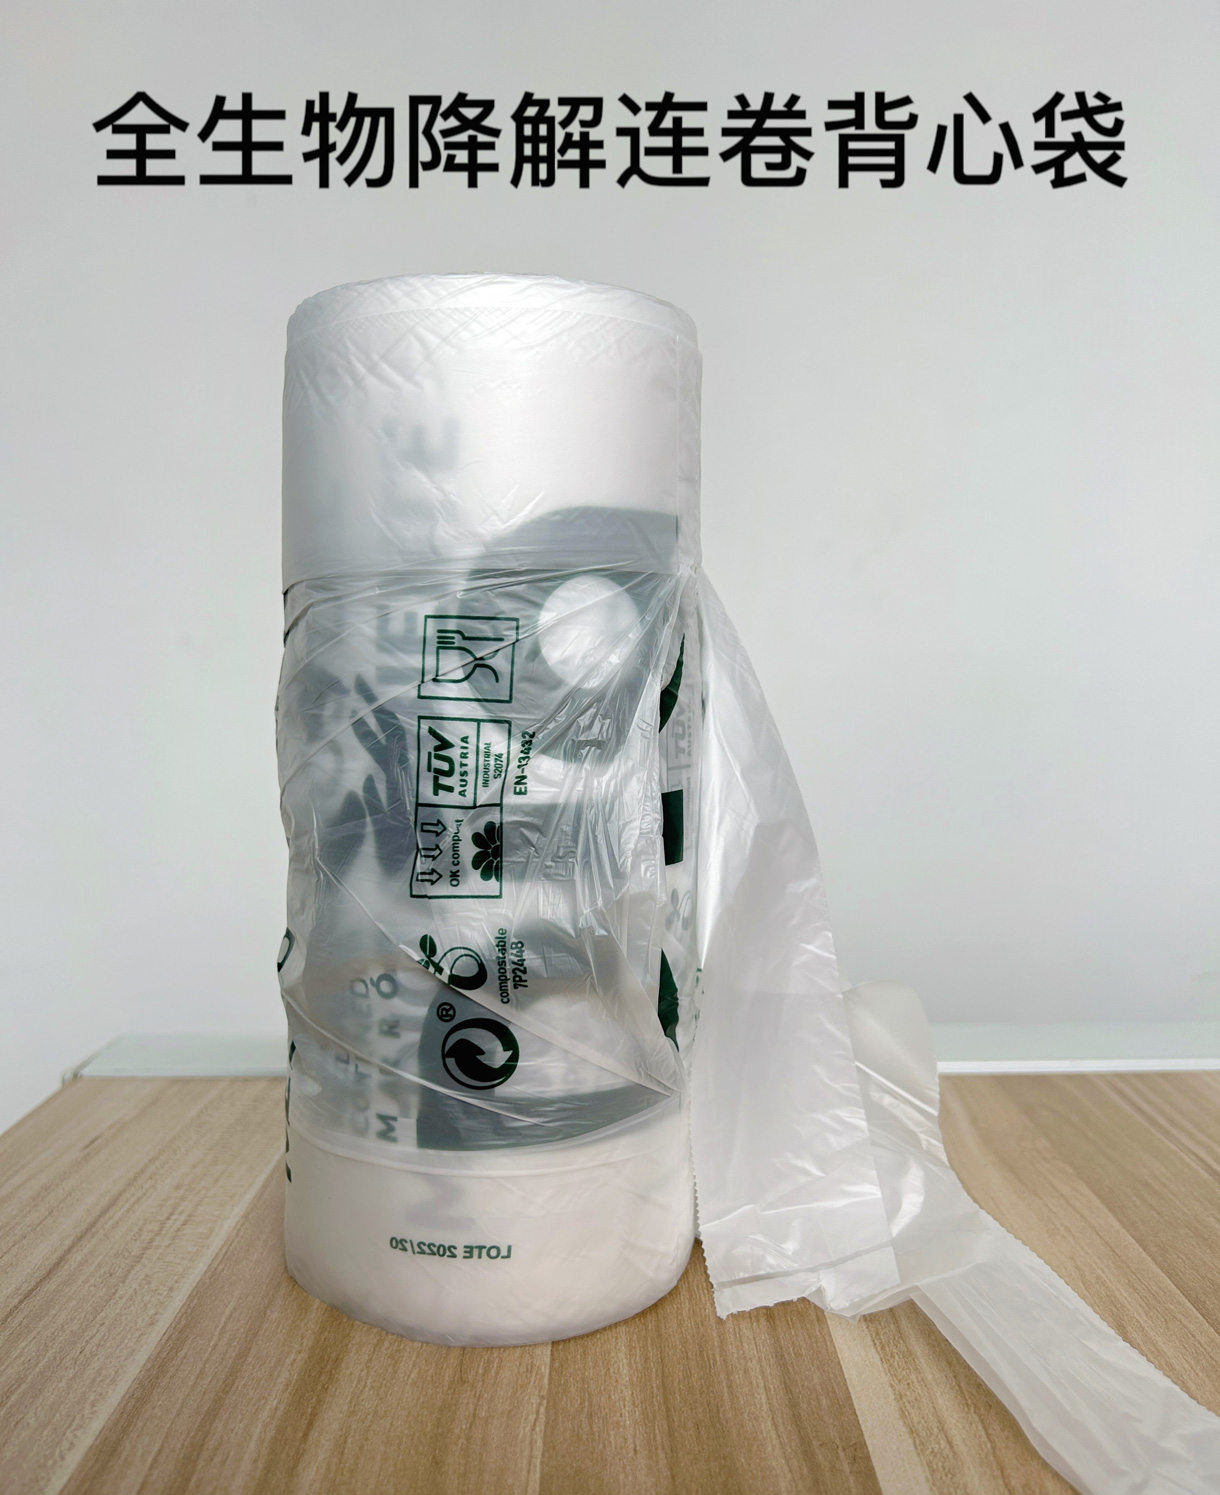 宁波置富智连科技有限公司将亮相CIPPME上海国际包装展